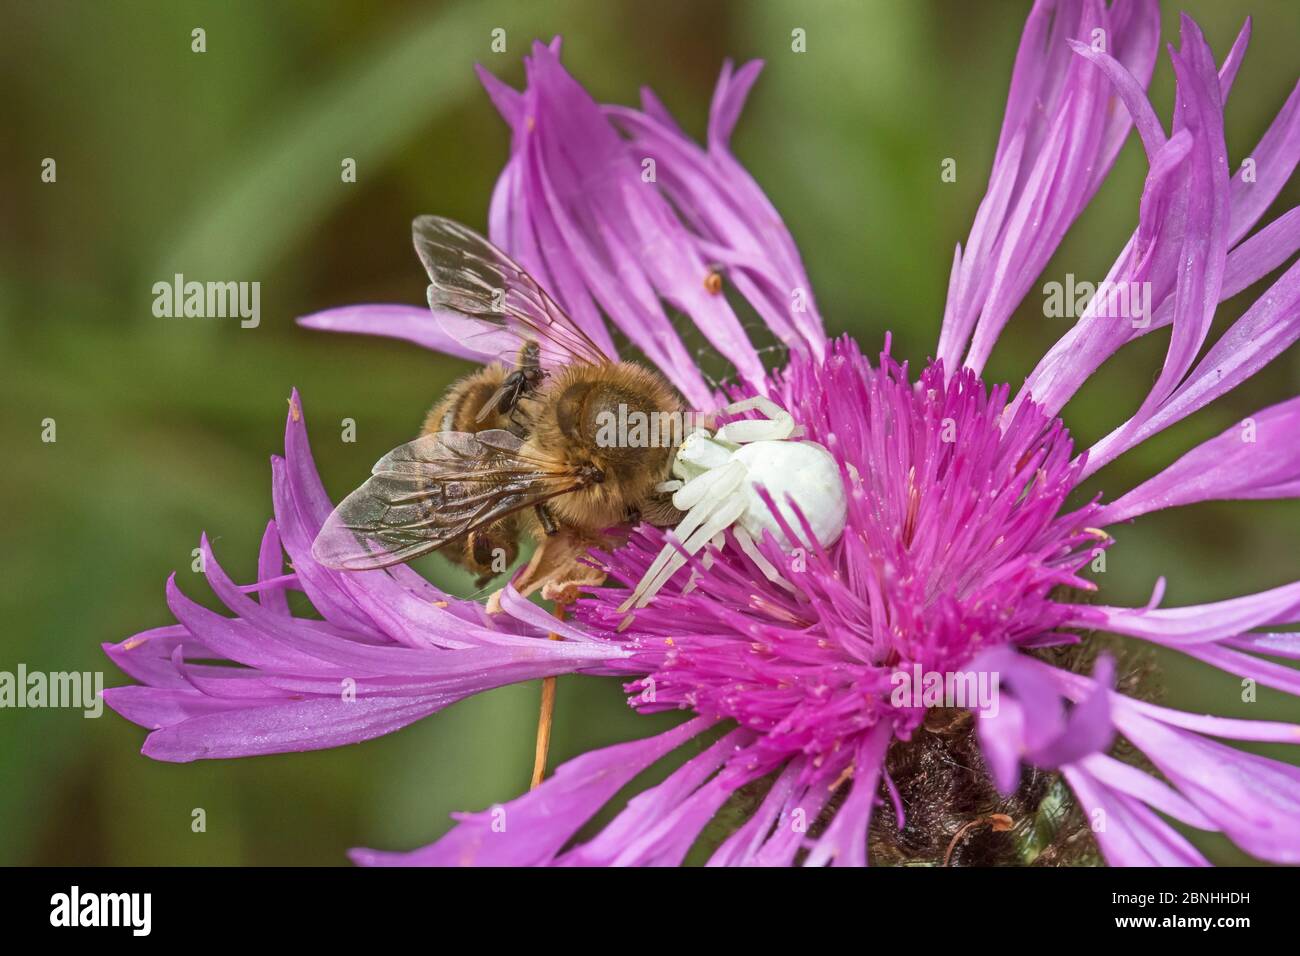 Krabbenspinne (Misumena vatia), die sich von toten Bienen ernährt Brockley, Lewisham, London, Großbritannien. Juli. Stockfoto